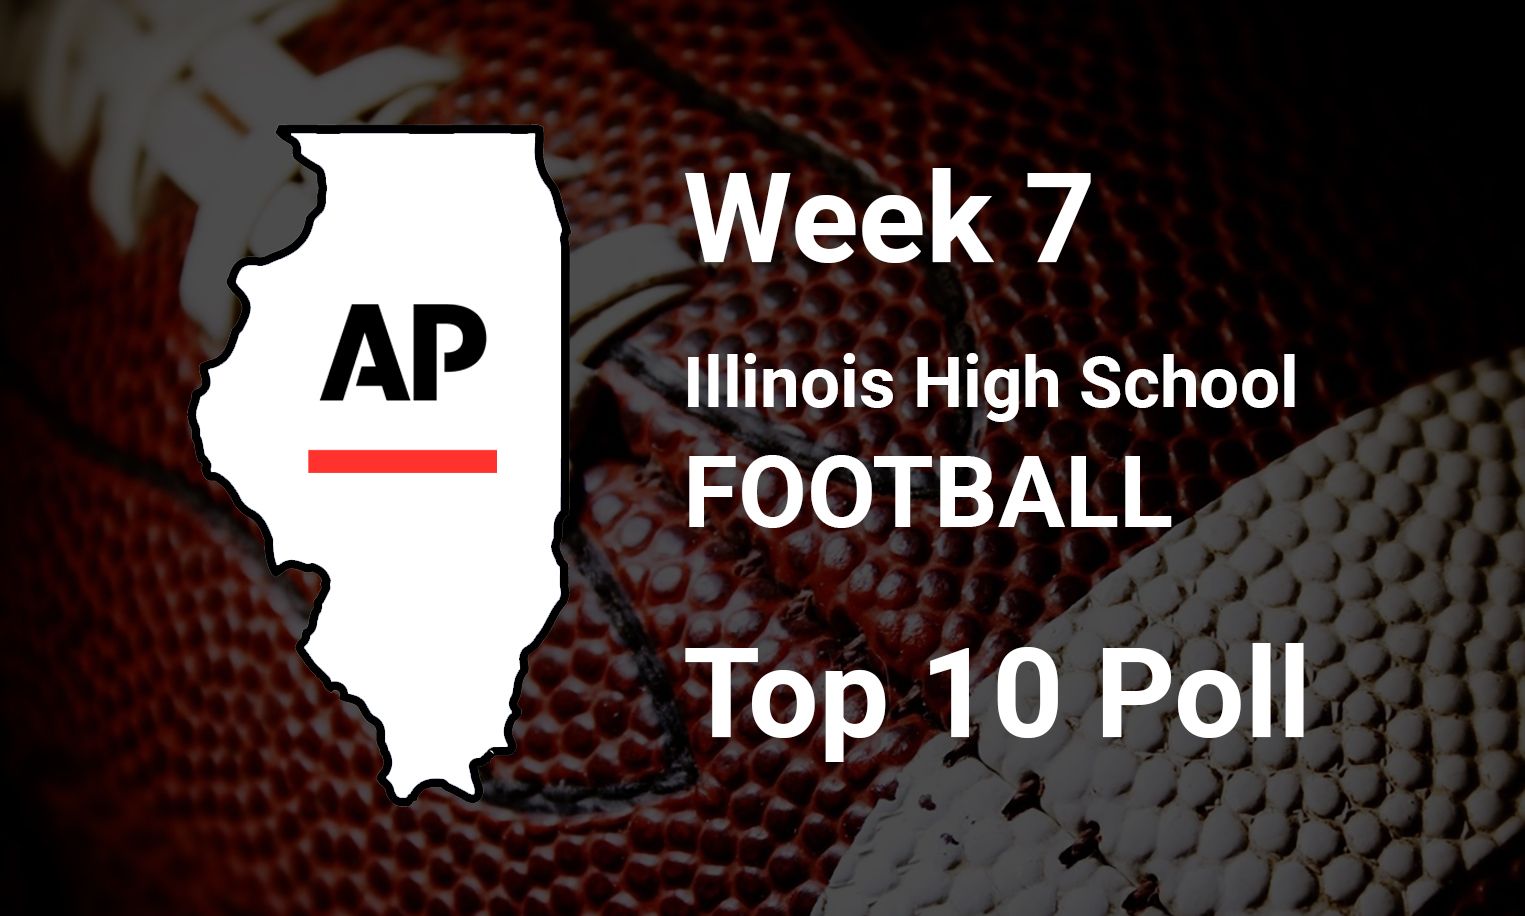 '22 Illinois High School Football Top 10 Poll Week 7